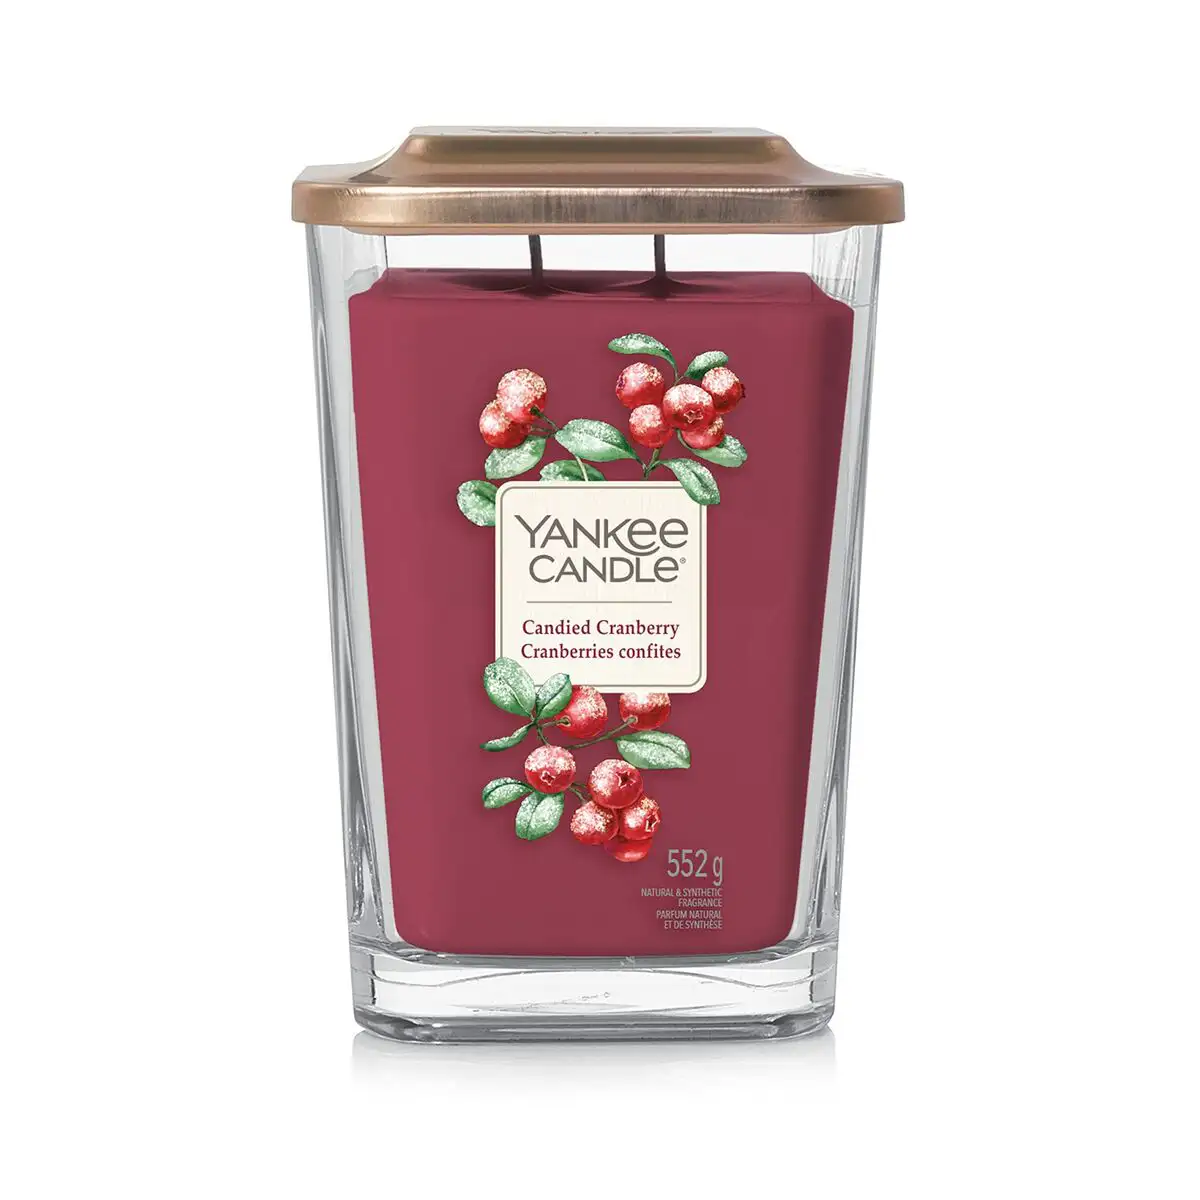 Bougie parfumee yankee candle candied cranberry_2826. DIAYTAR SENEGAL - L'Art du Shopping Distinctif. Naviguez à travers notre gamme soigneusement sélectionnée et choisissez des produits qui définissent votre mode de vie.